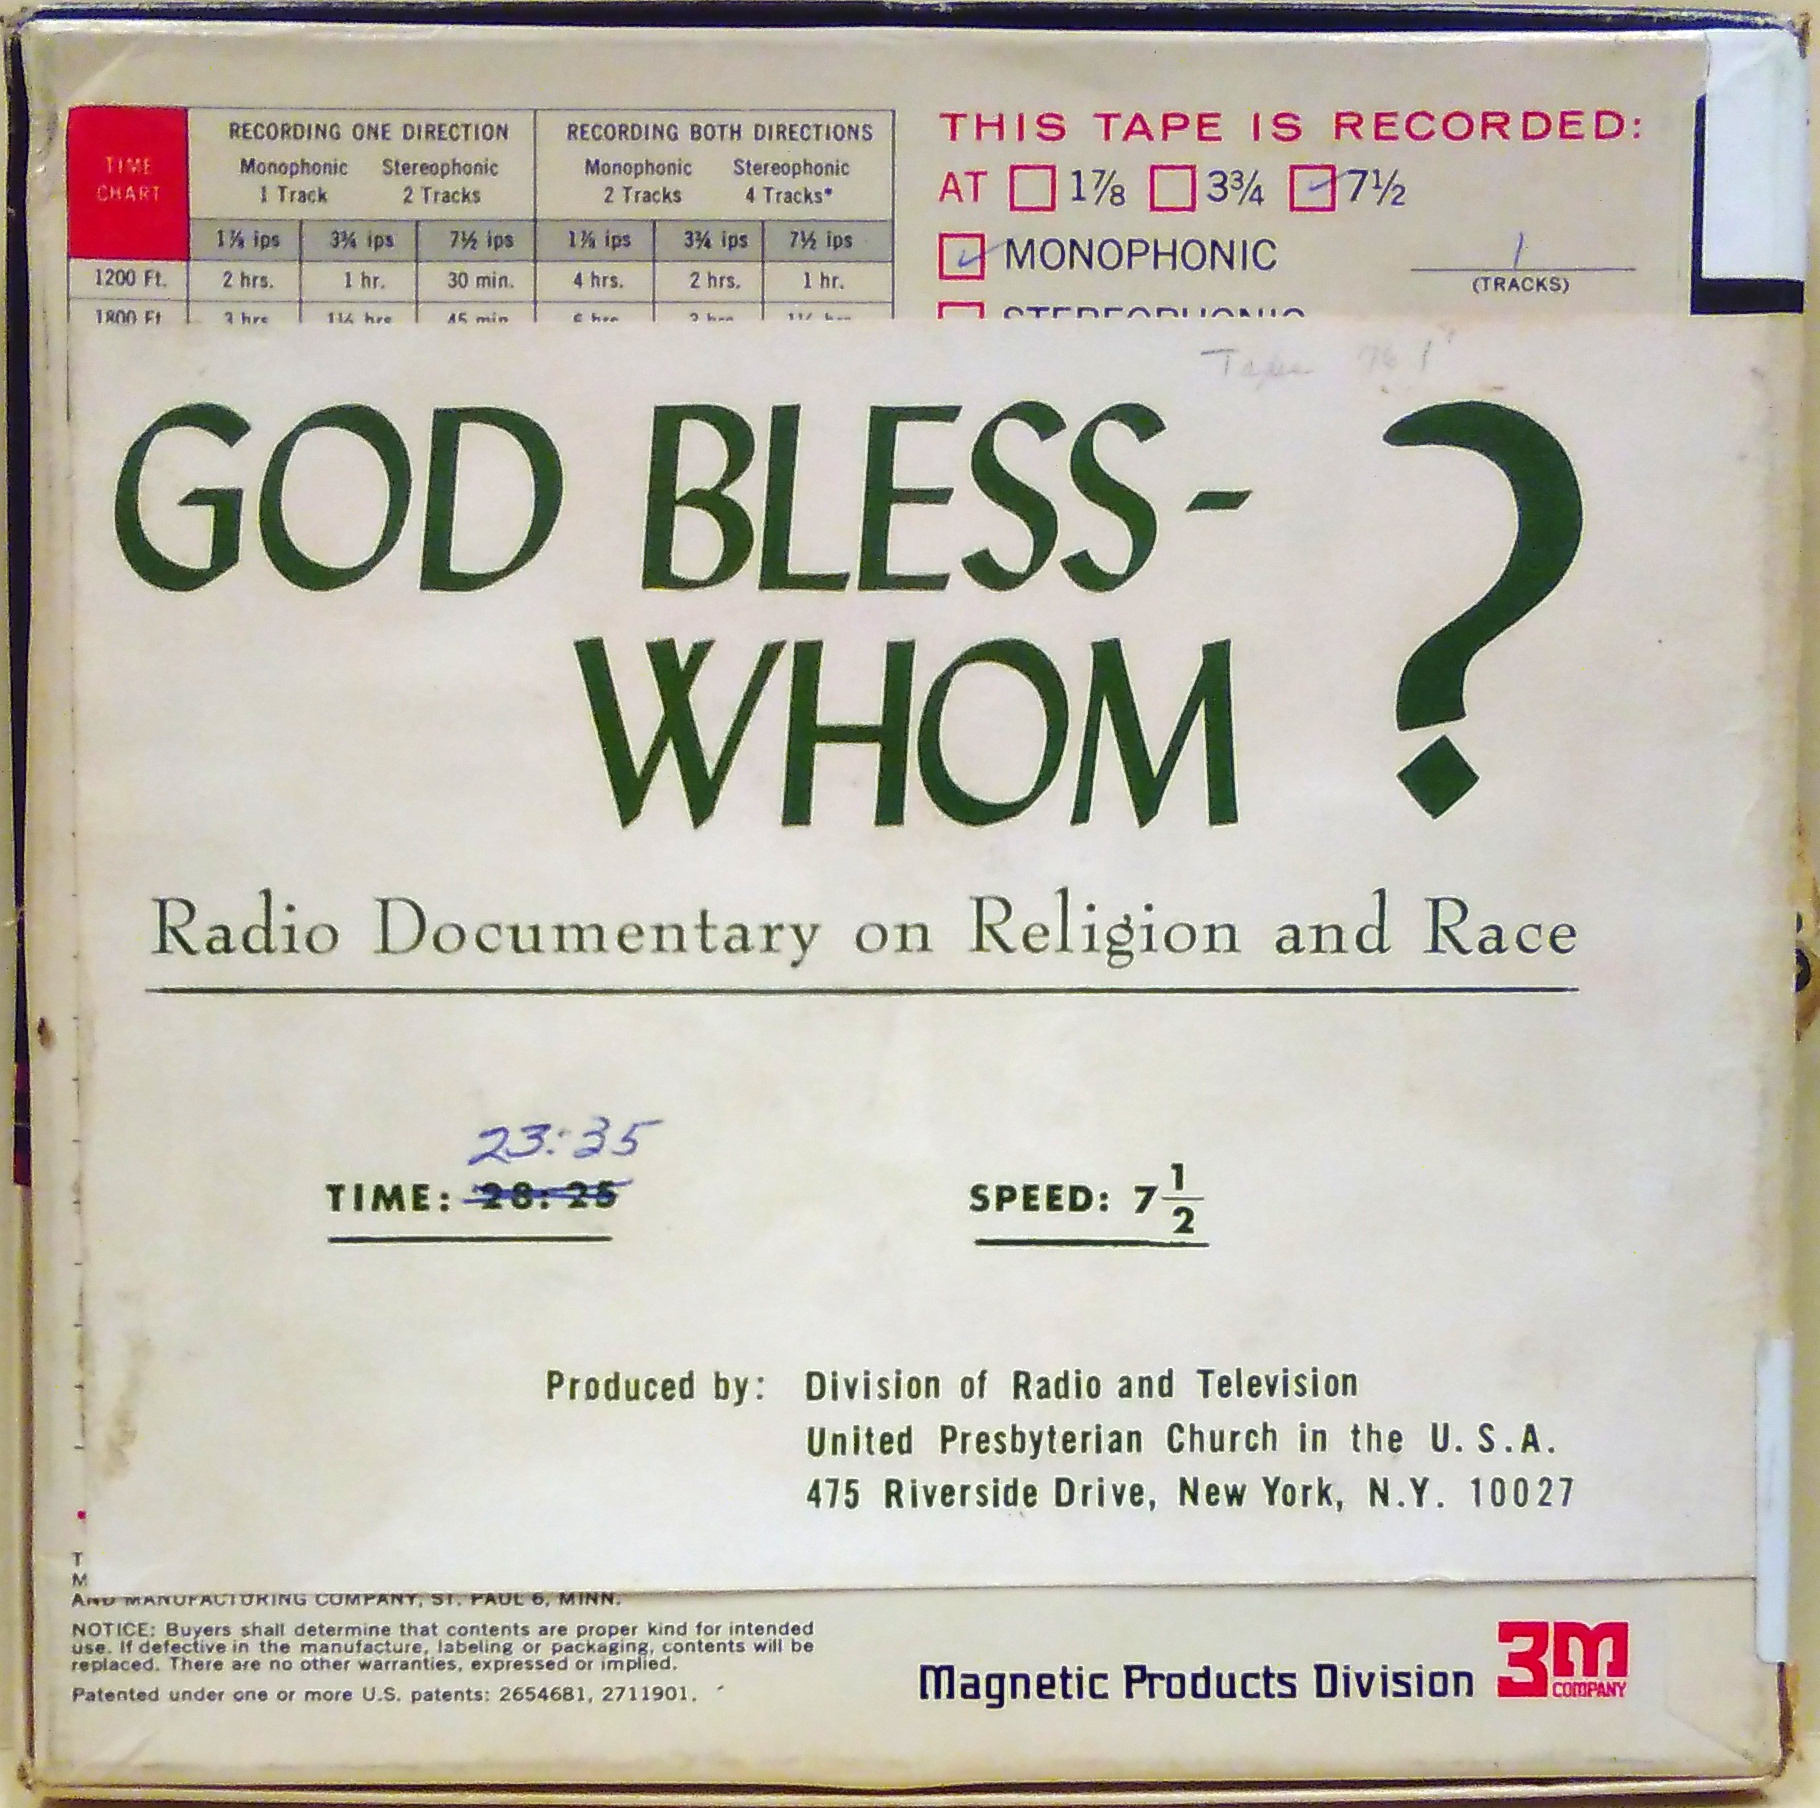 God bless - whom? :